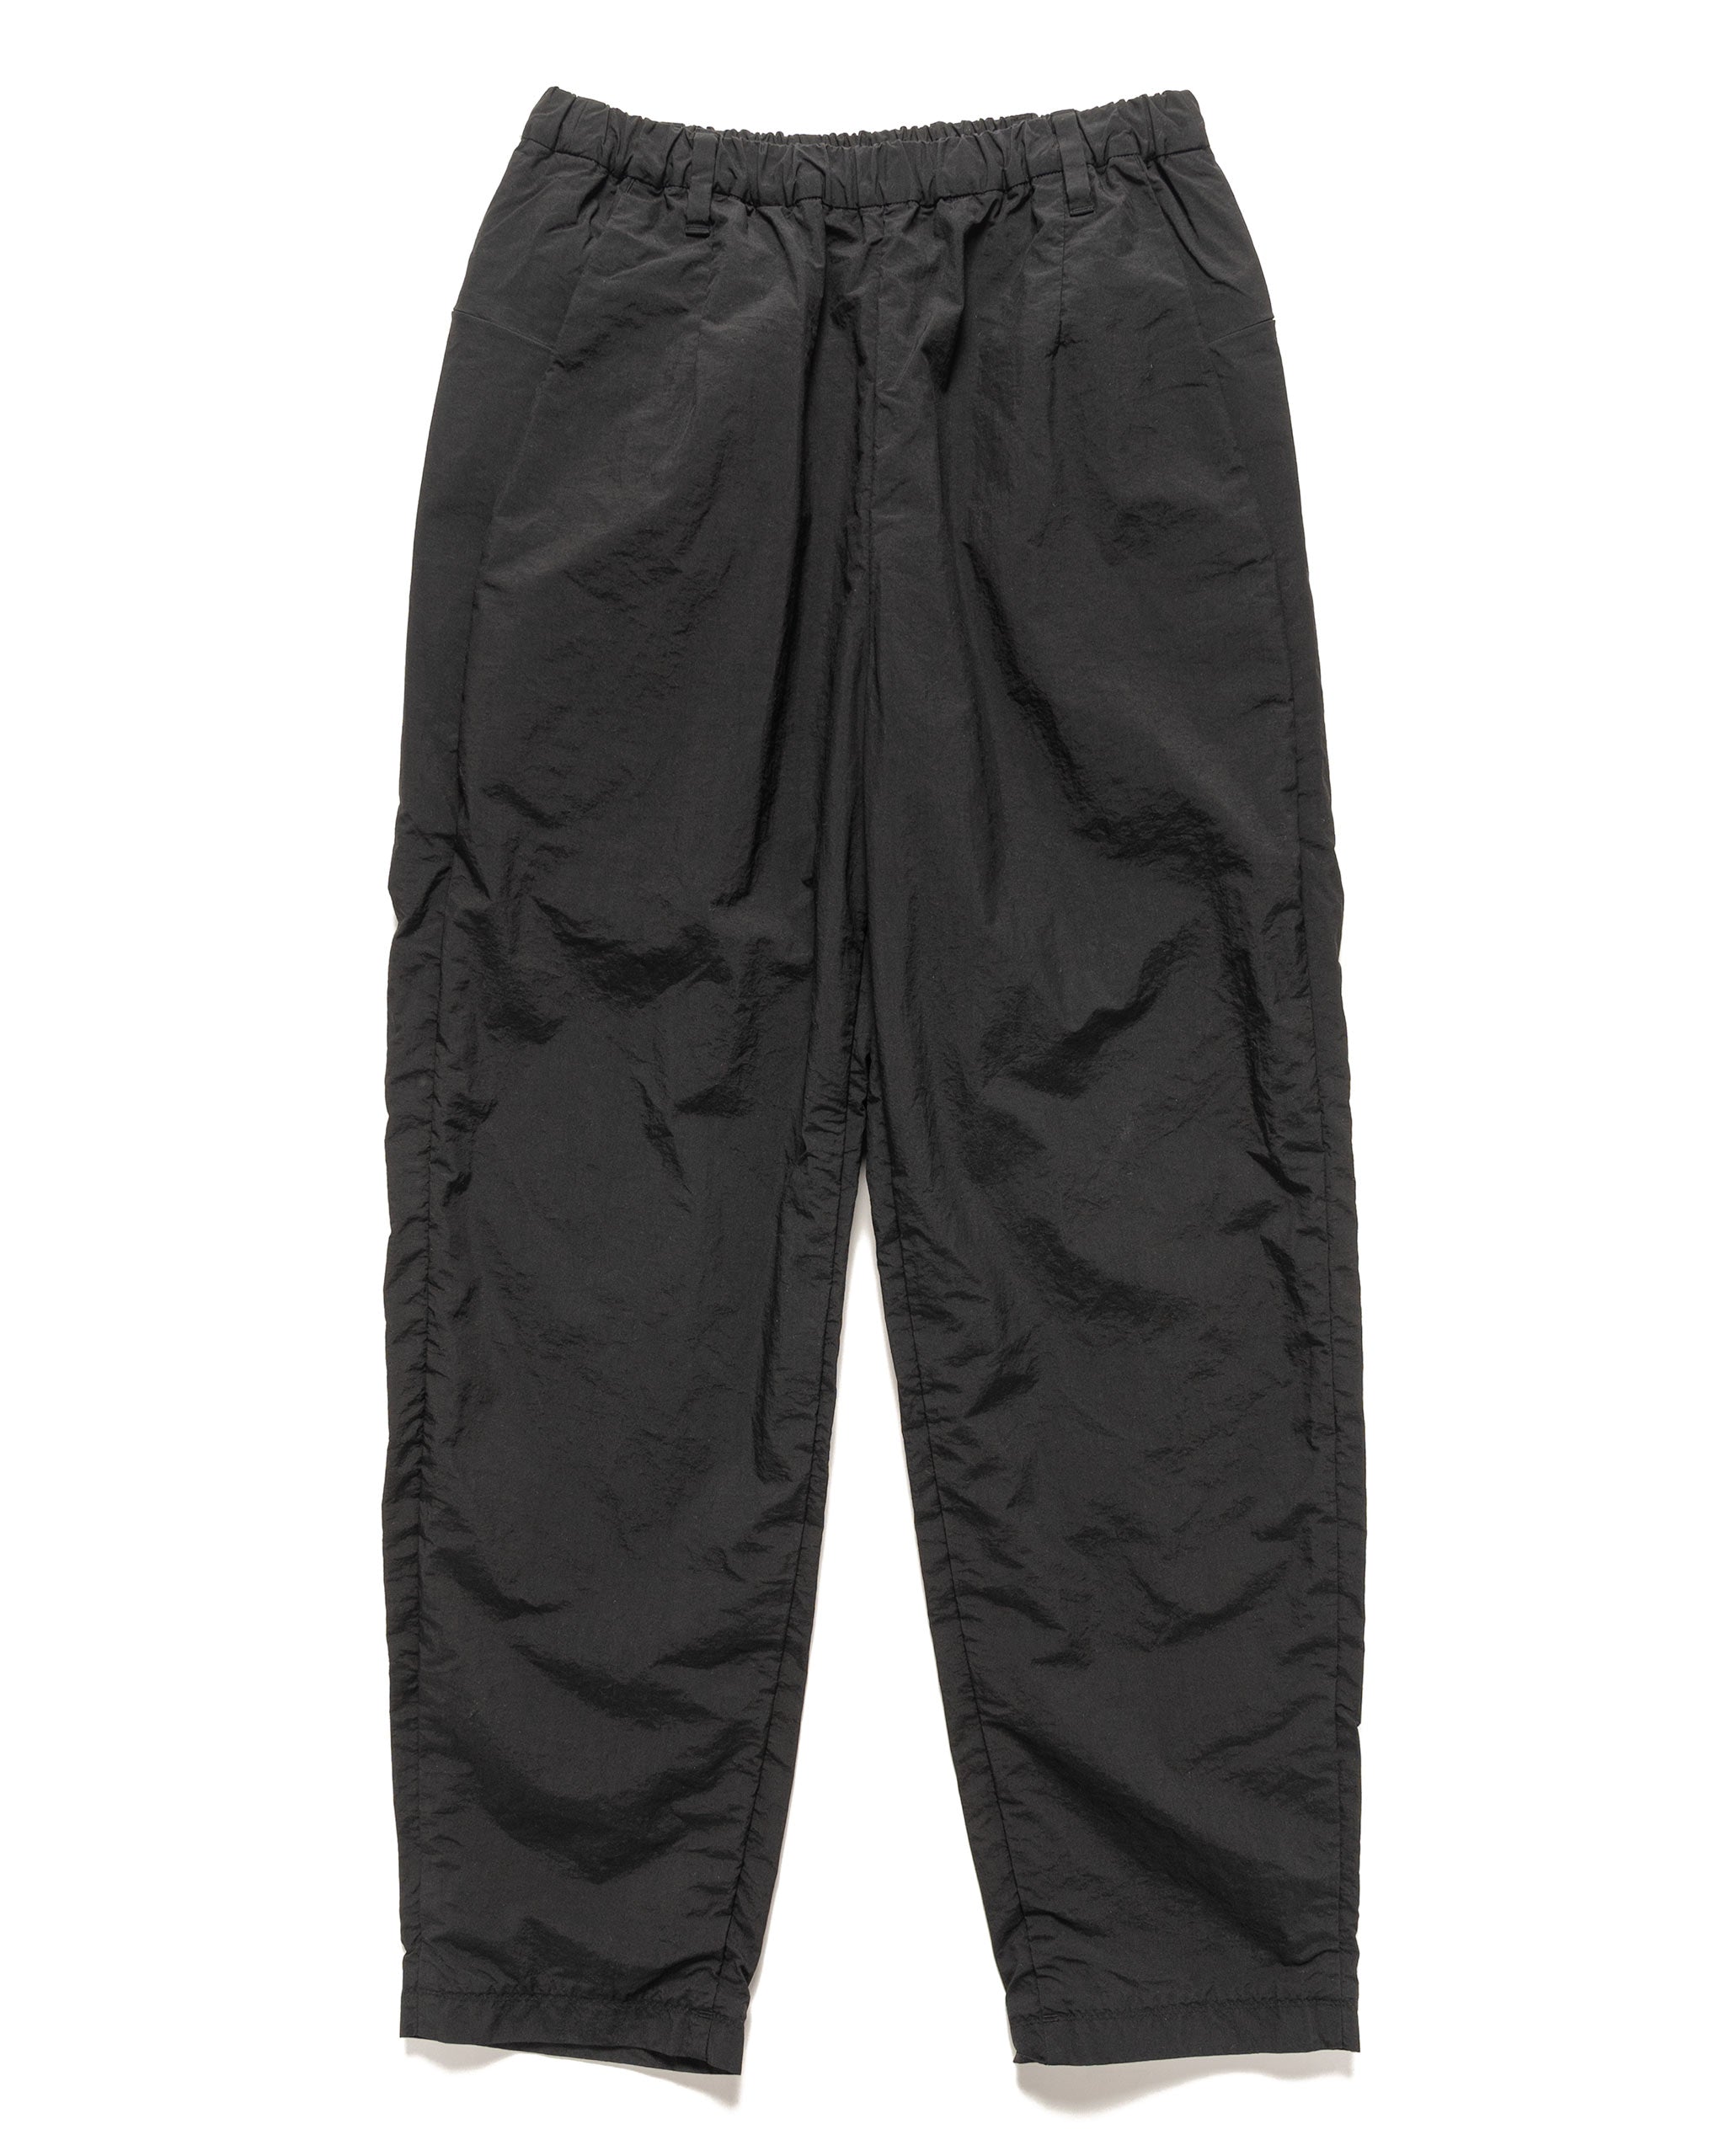 HAVEN Rove Packable Pant - GORE-TEX WINDSTOPPER® 3L Tricot Black